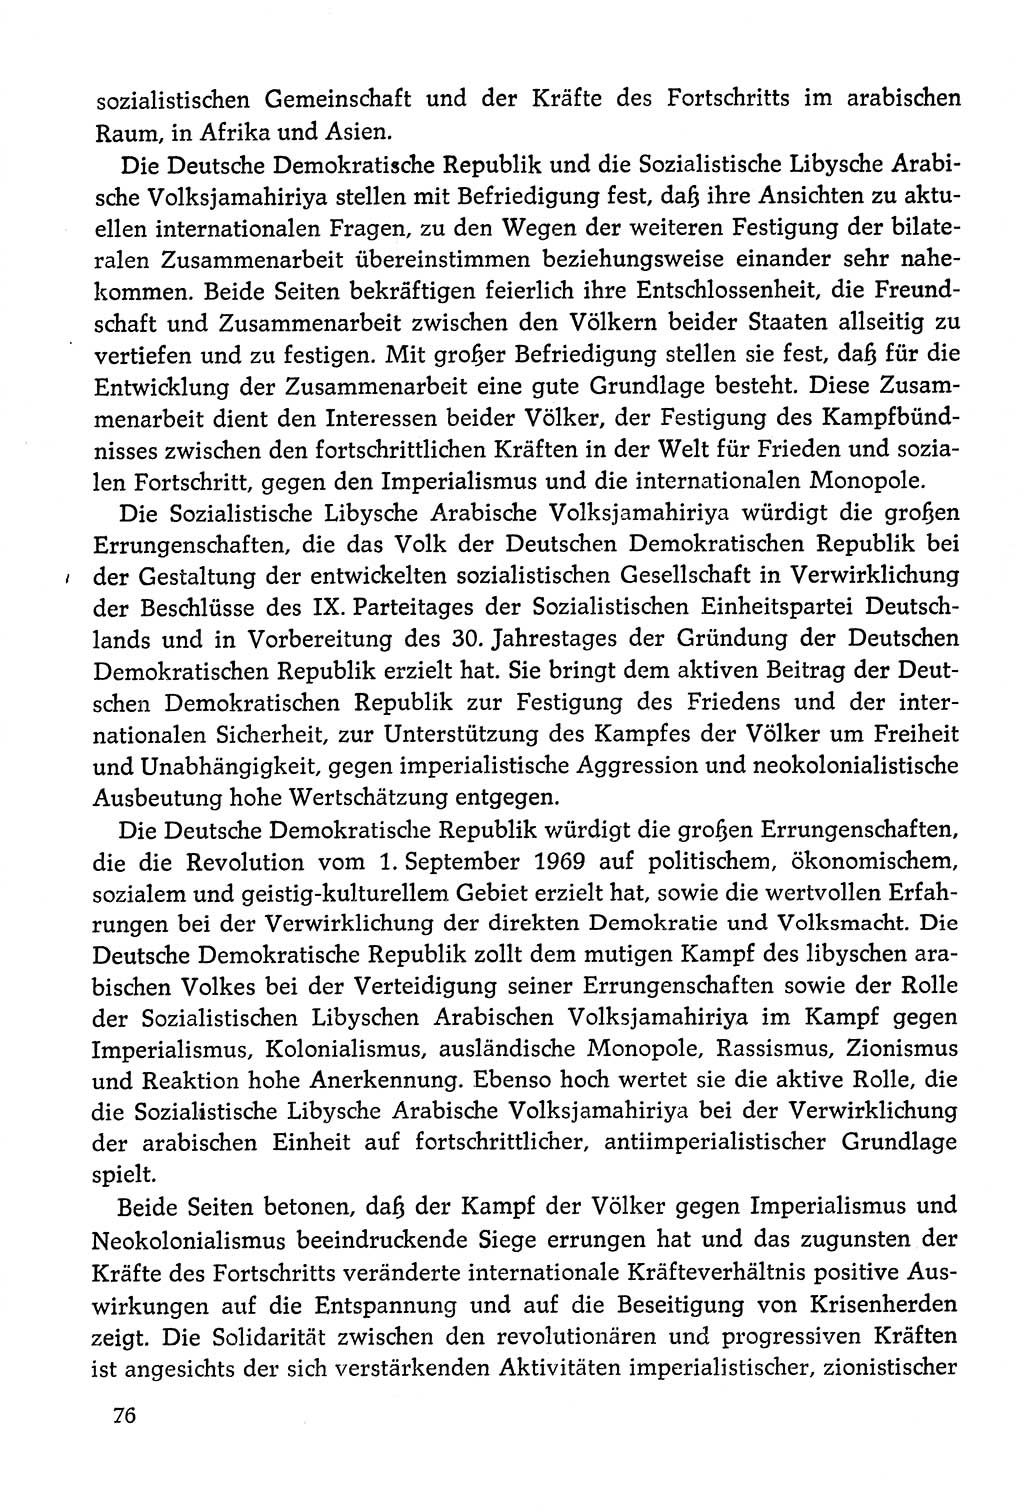 Dokumente der Sozialistischen Einheitspartei Deutschlands (SED) [Deutsche Demokratische Republik (DDR)] 1978-1979, Seite 76 (Dok. SED DDR 1978-1979, S. 76)